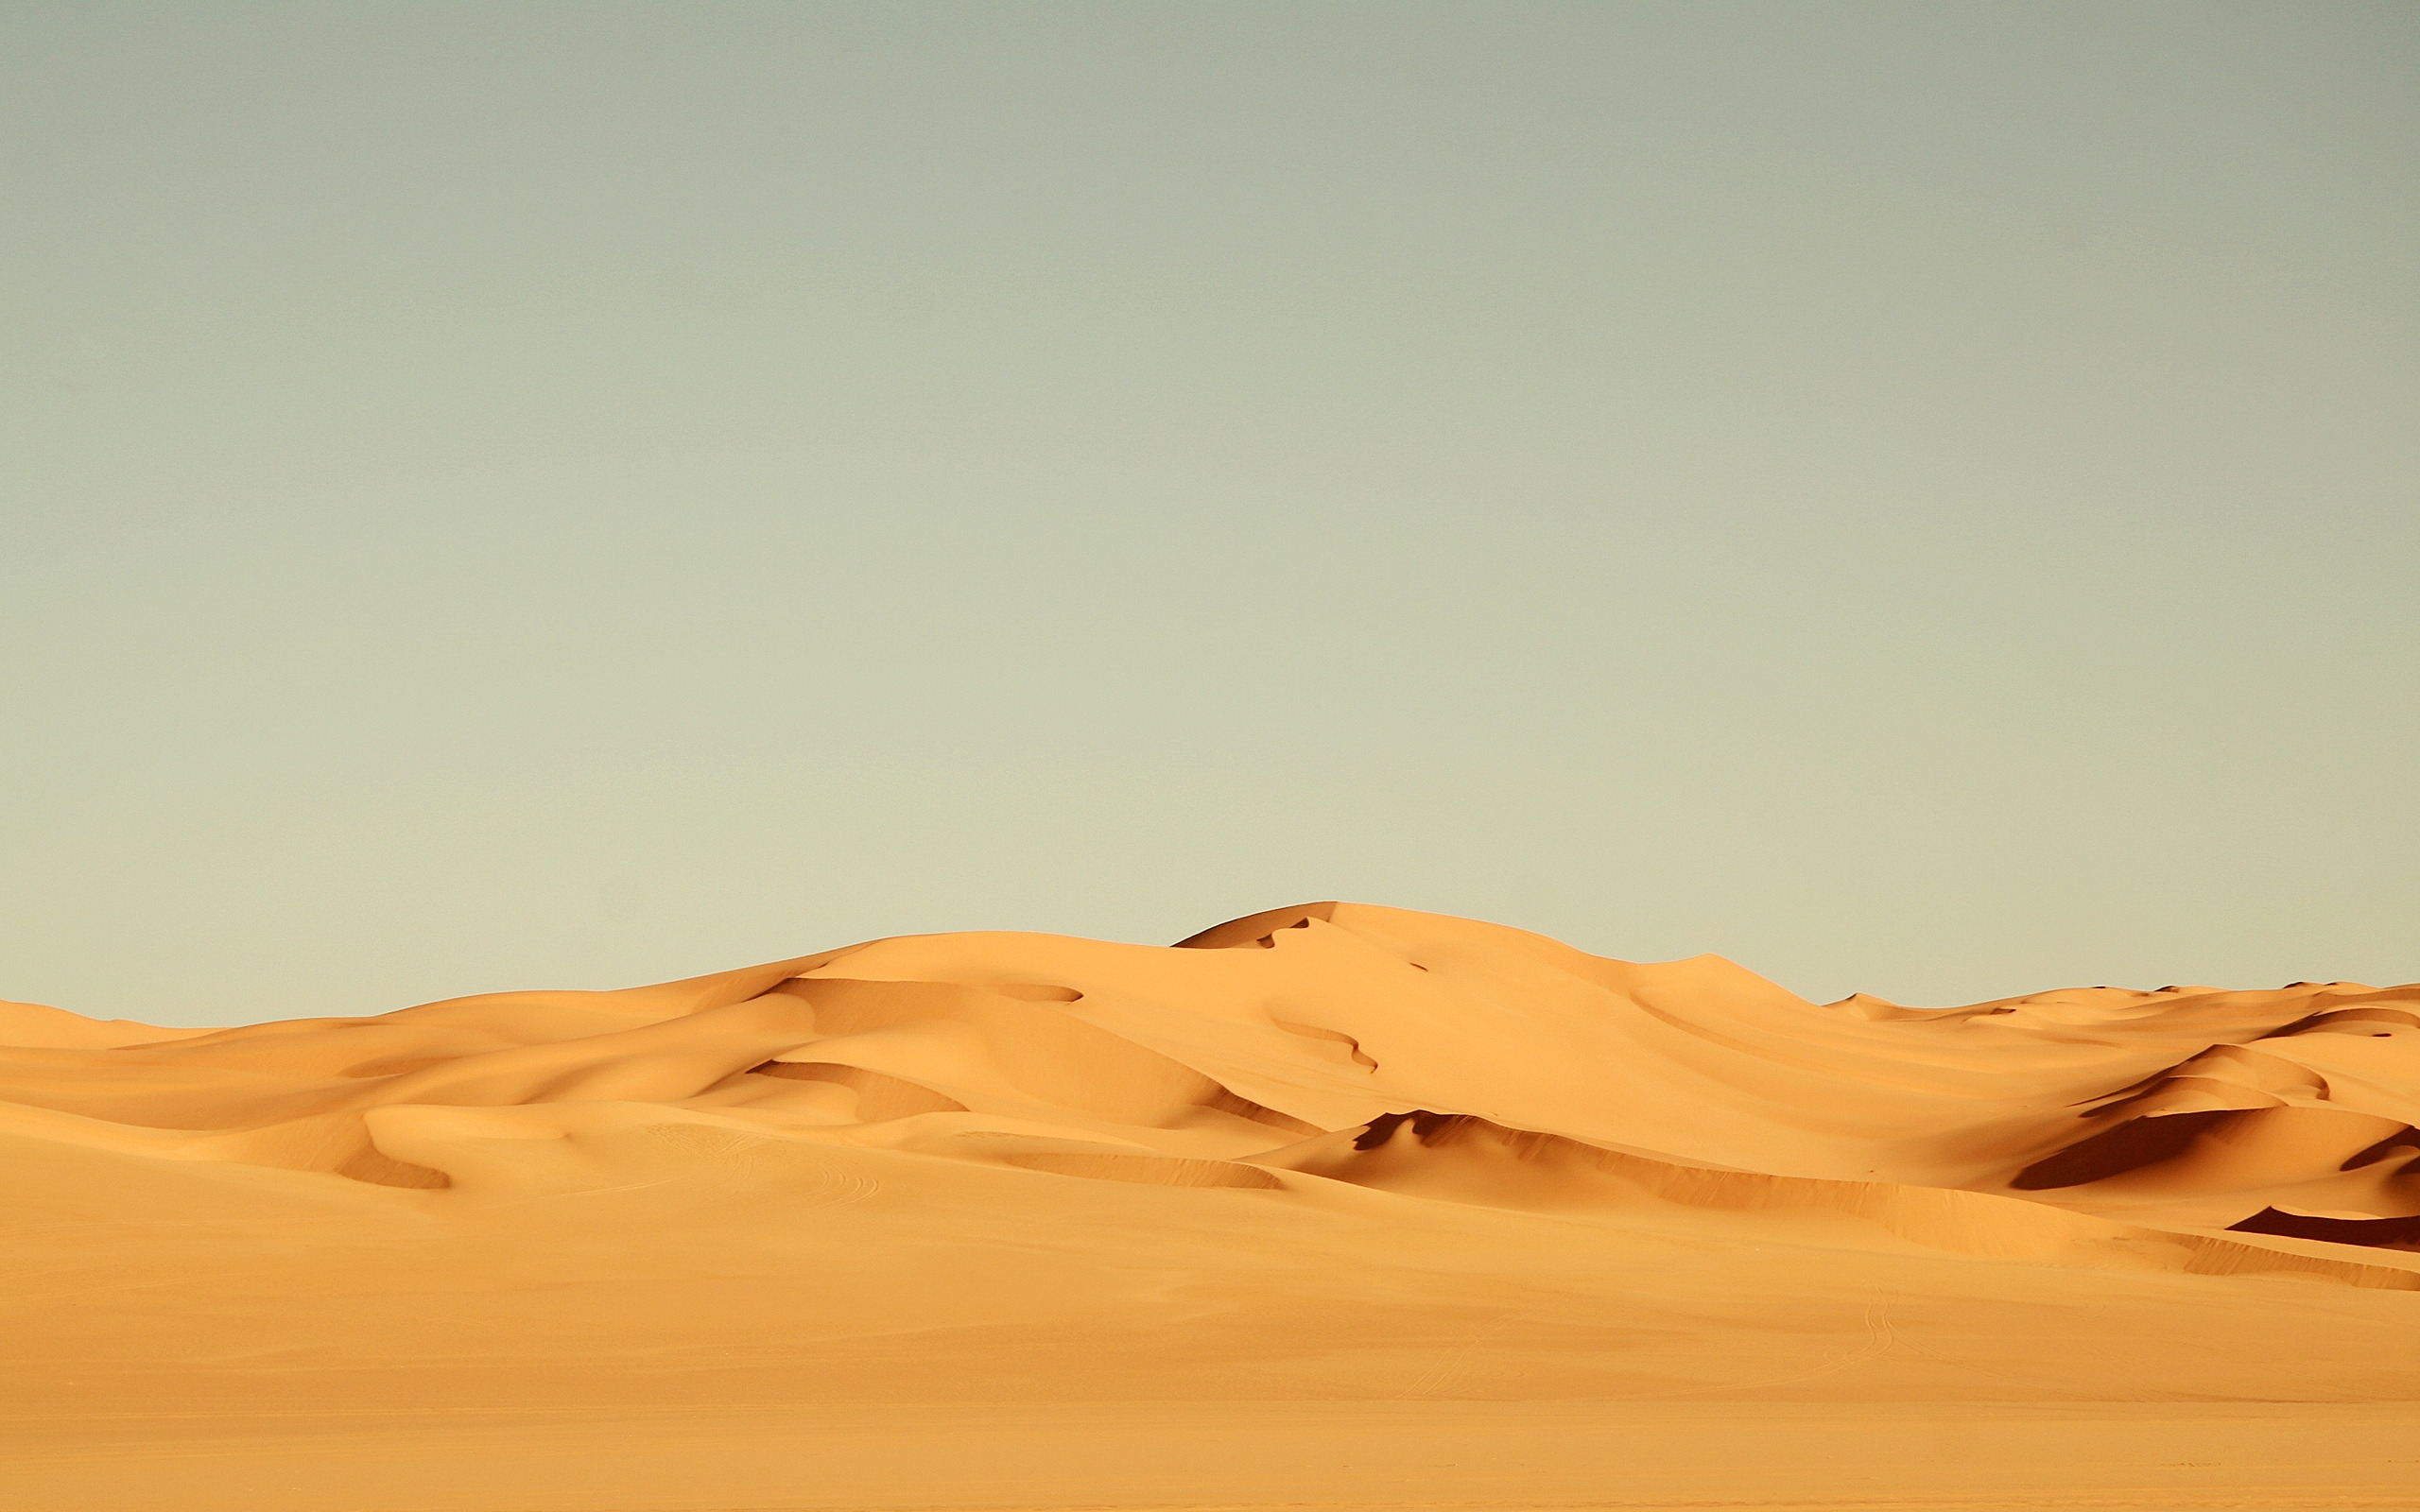 Sahara Desert for 2560 x 1600 widescreen resolution